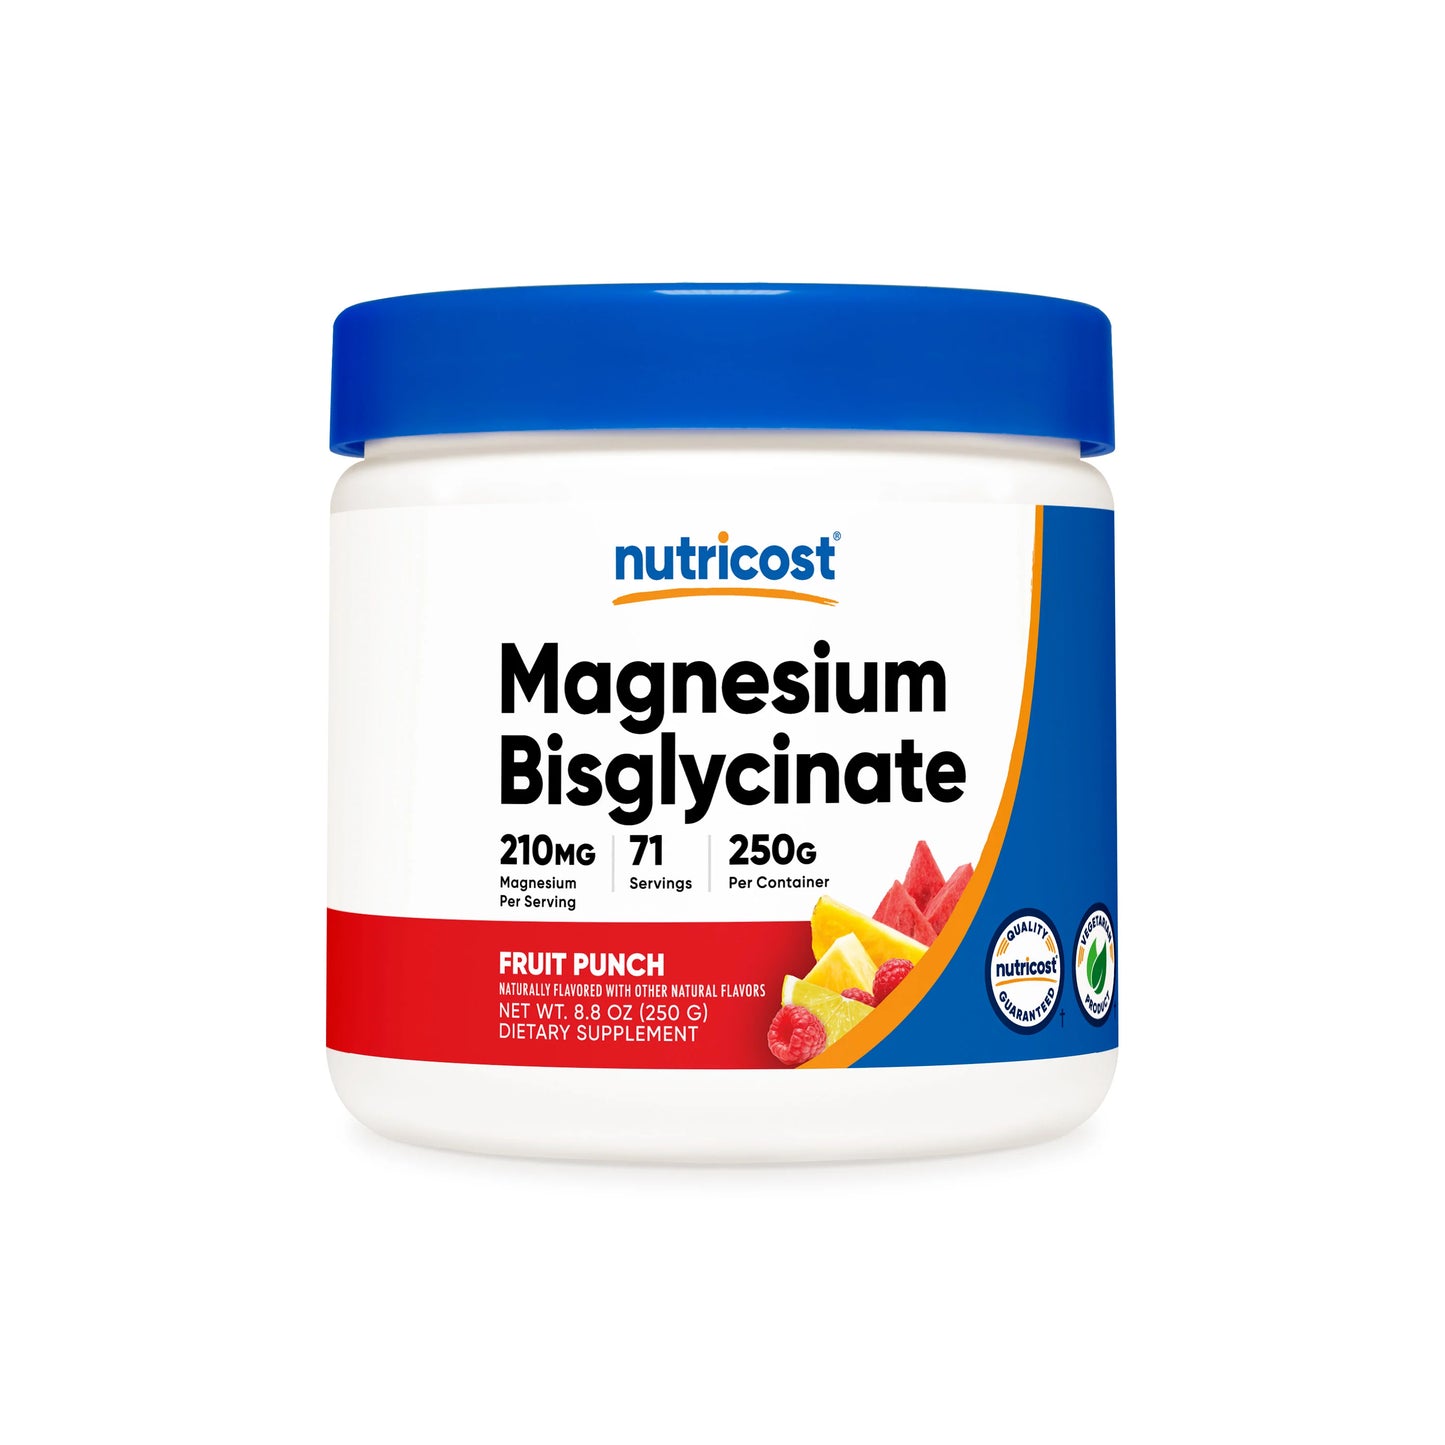 Nutricost Magnesium Bisglycinate